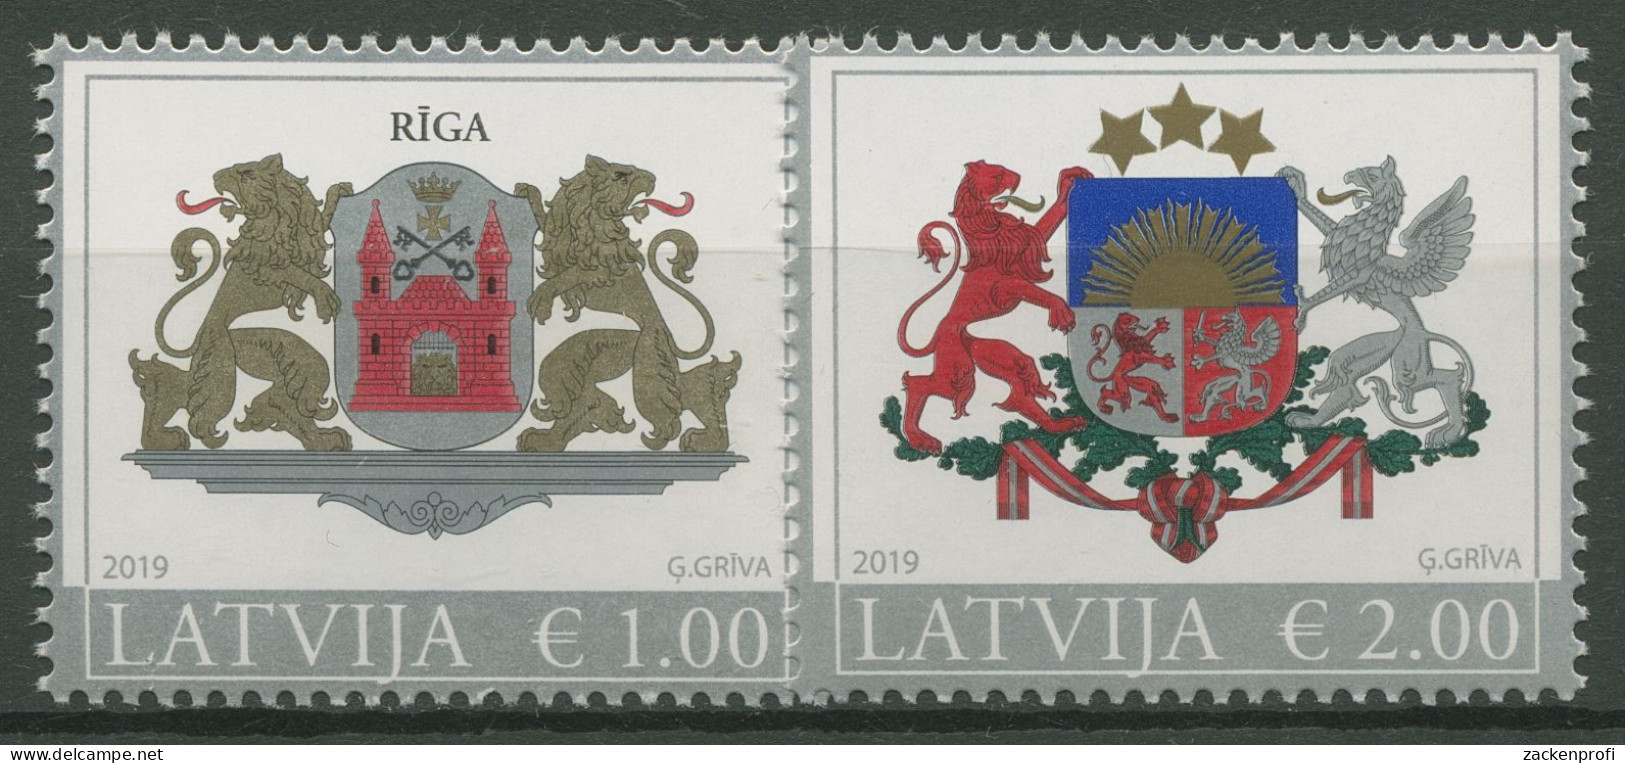 Lettland 2015 Freimarken Wappen 935/36 II Postfrisch - Latvia